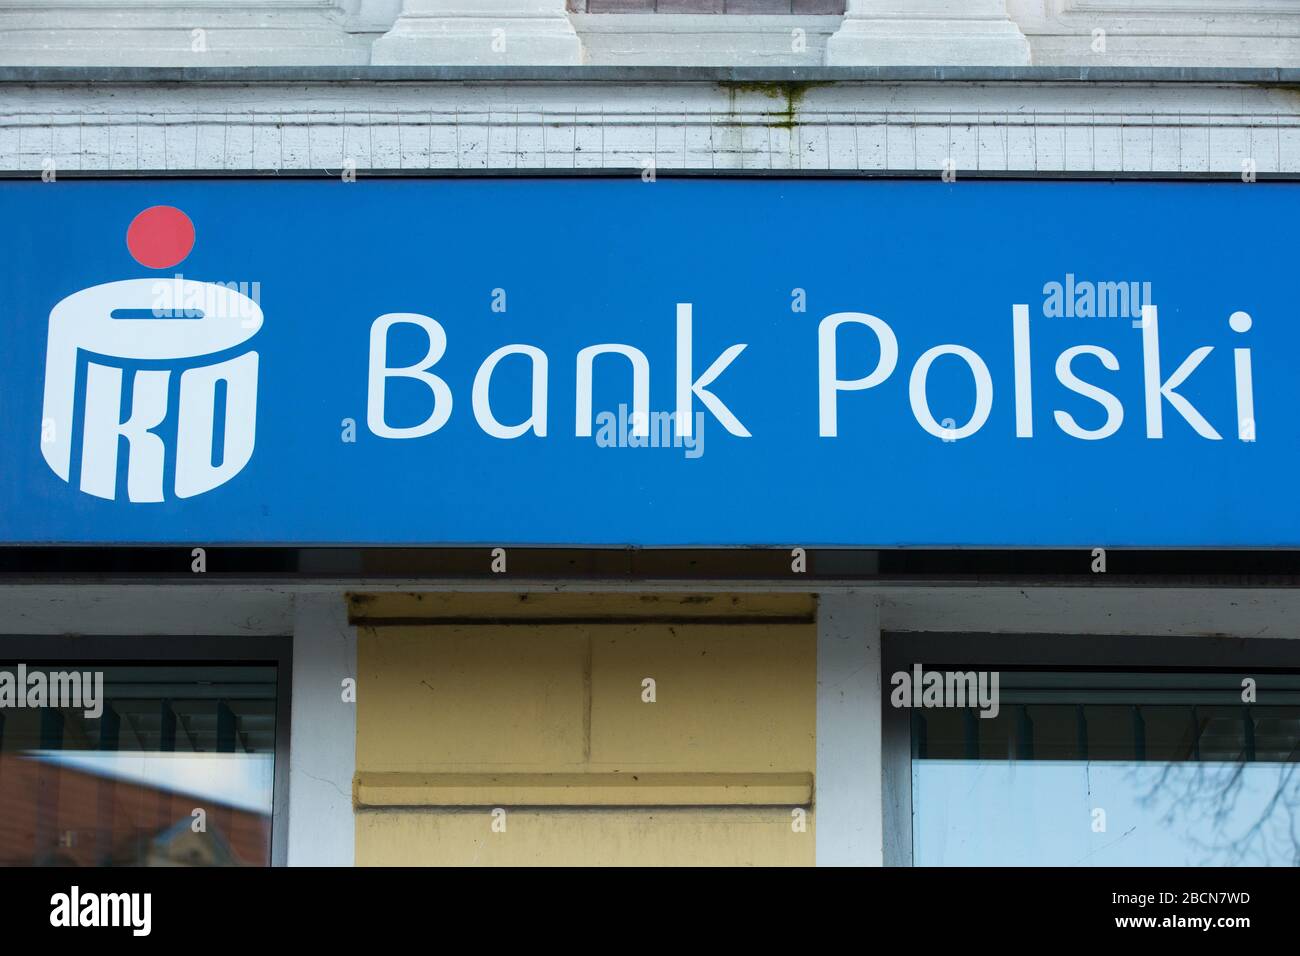 Das PKO Bank Polski Logo, die größte Bank Polens, wurde im Jahre 1920  gegründet und ist in einer der Filialen der Bank zu sehen Stockfotografie -  Alamy